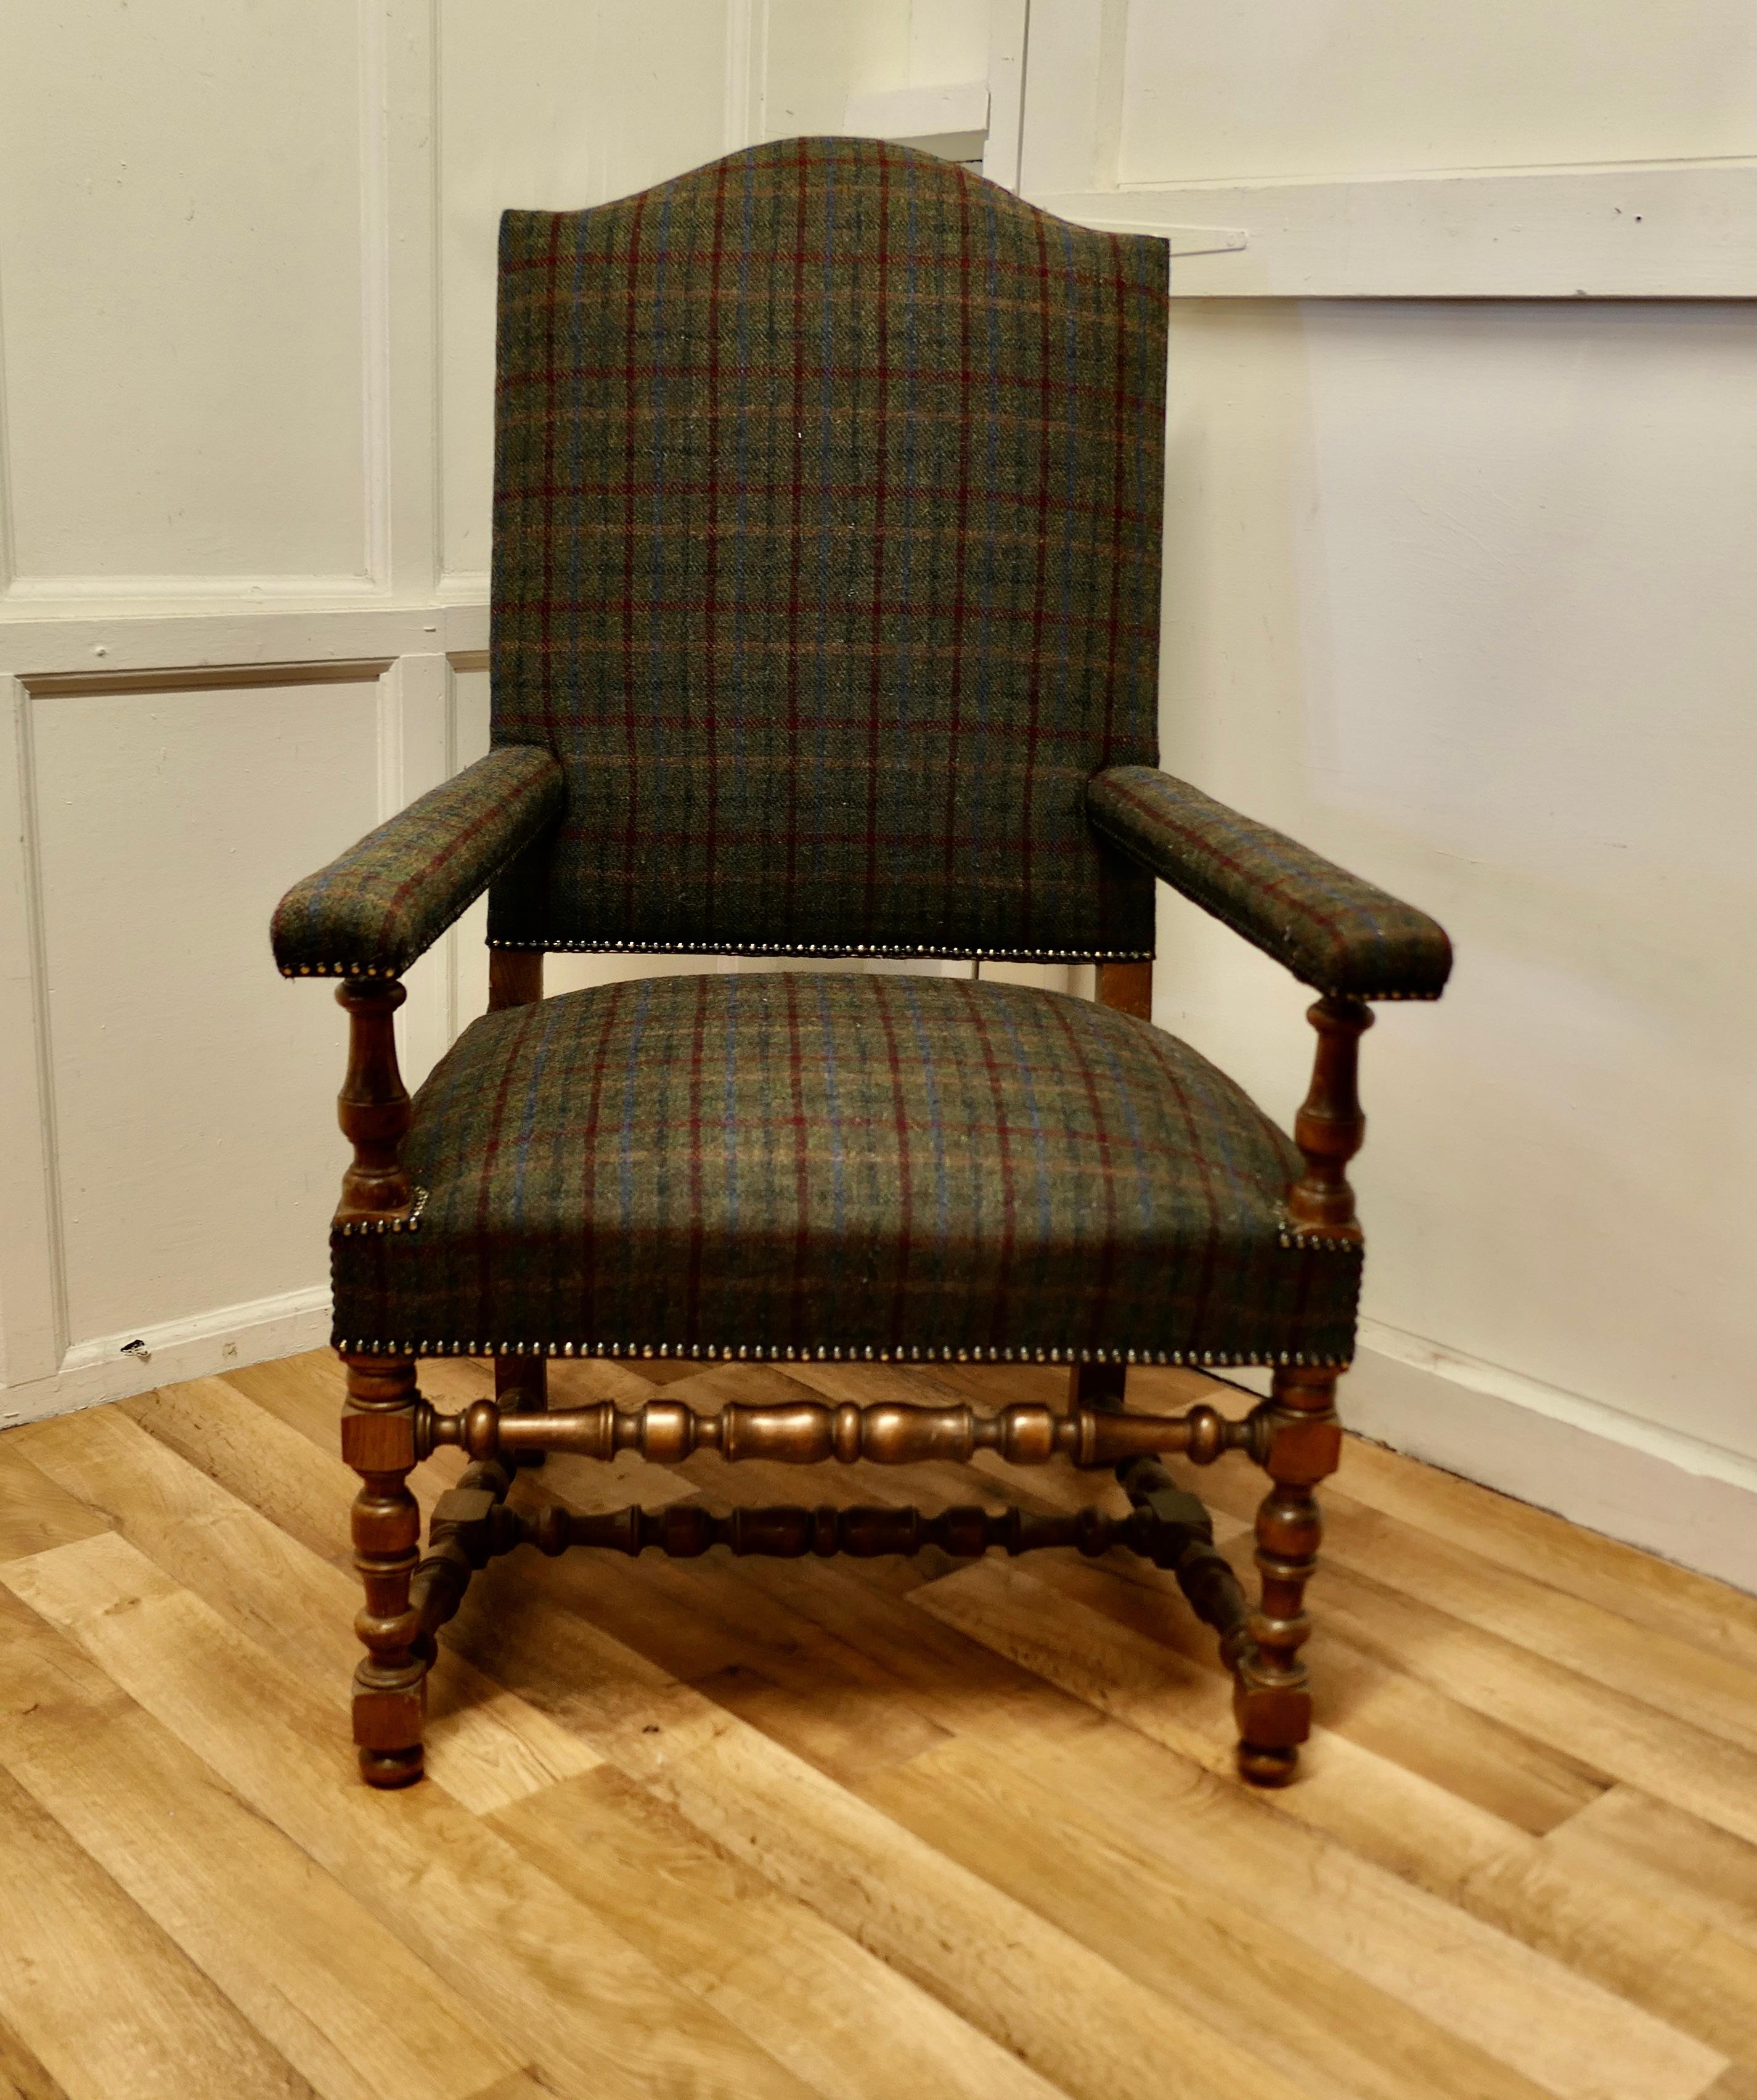 Chaise de bibliothèque artisanale en chêne doré, Chaise trône

Il s'agit d'un fauteuil surdimensionné, fabriqué en chêne doré et tapissé d'un tissu à carreaux 100% Harris Tweed avec des clous en laiton
Une bonne grande chaise Arts and Crafts